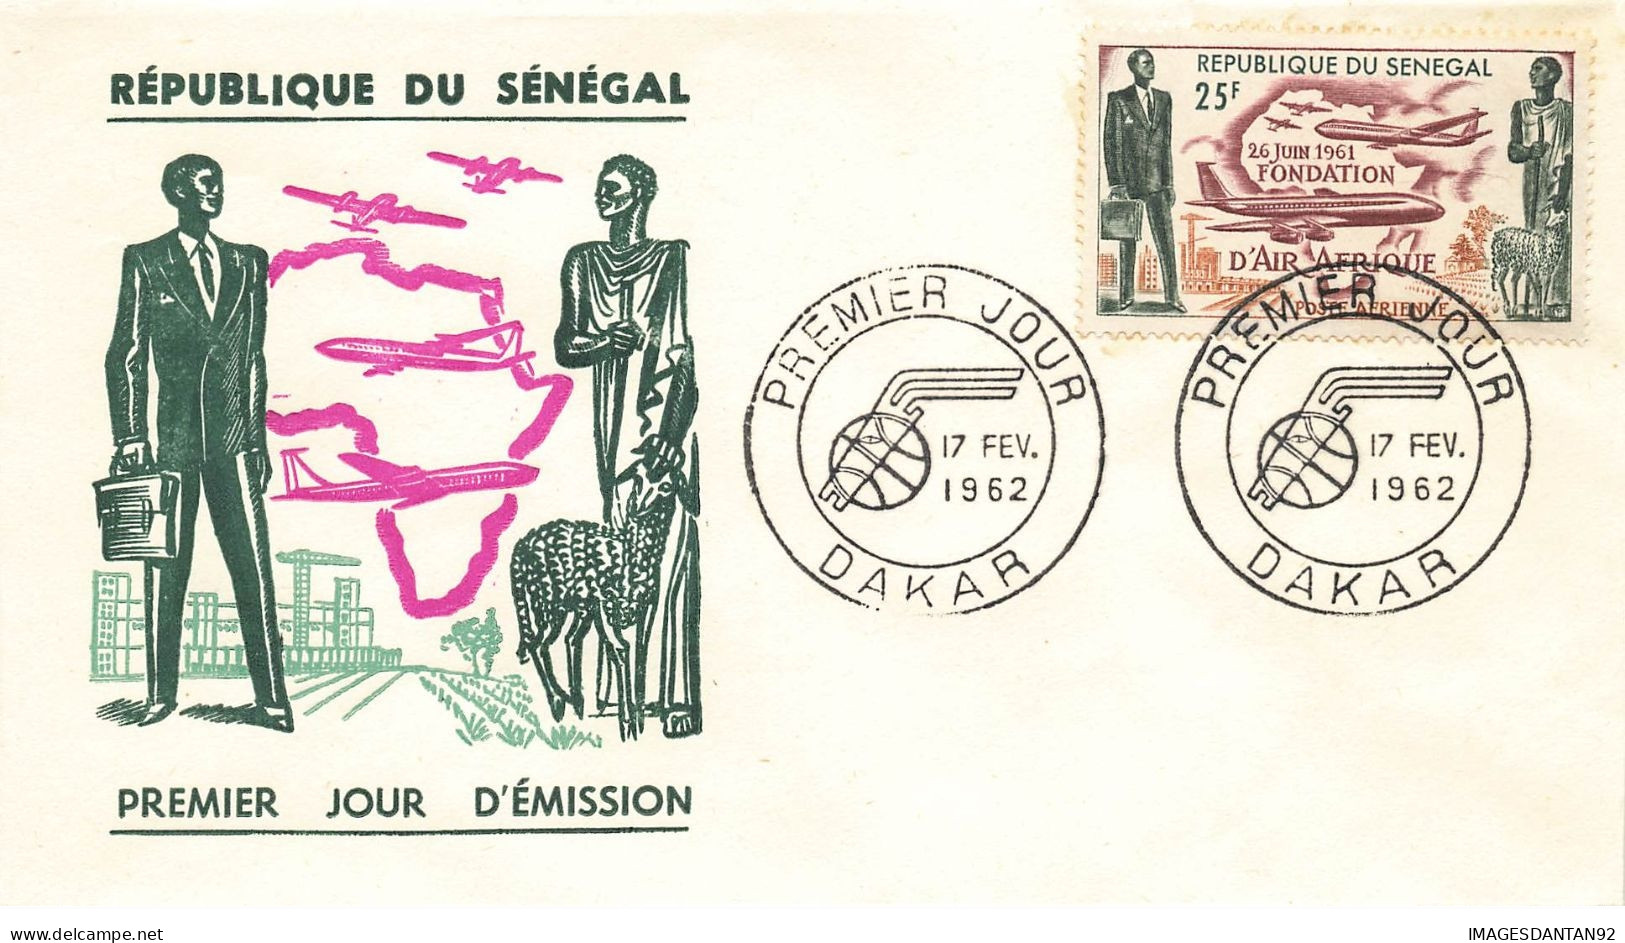 SENEGAL #26184 DAKAR 1962 PREMIER JOUR FONDATION AIR AFRIQUE - Sénégal (1960-...)